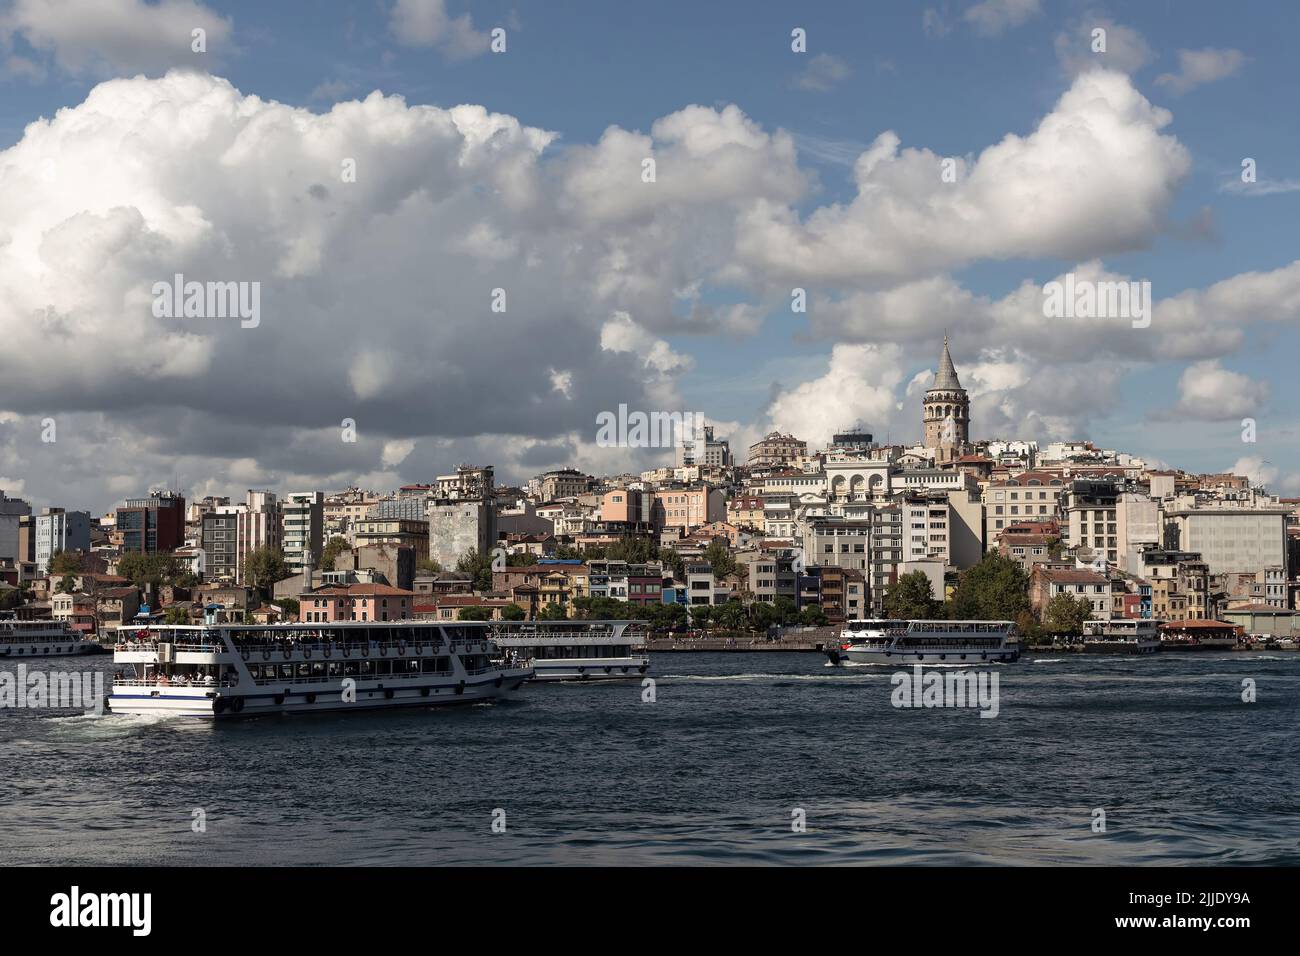 Vista delle barche del tour nella zona del Corno d'Oro del Bosforo di Istanbul. La torre Galata e il quartiere Beyoglu sono sullo sfondo. È una giornata estiva soleggiata. Foto Stock